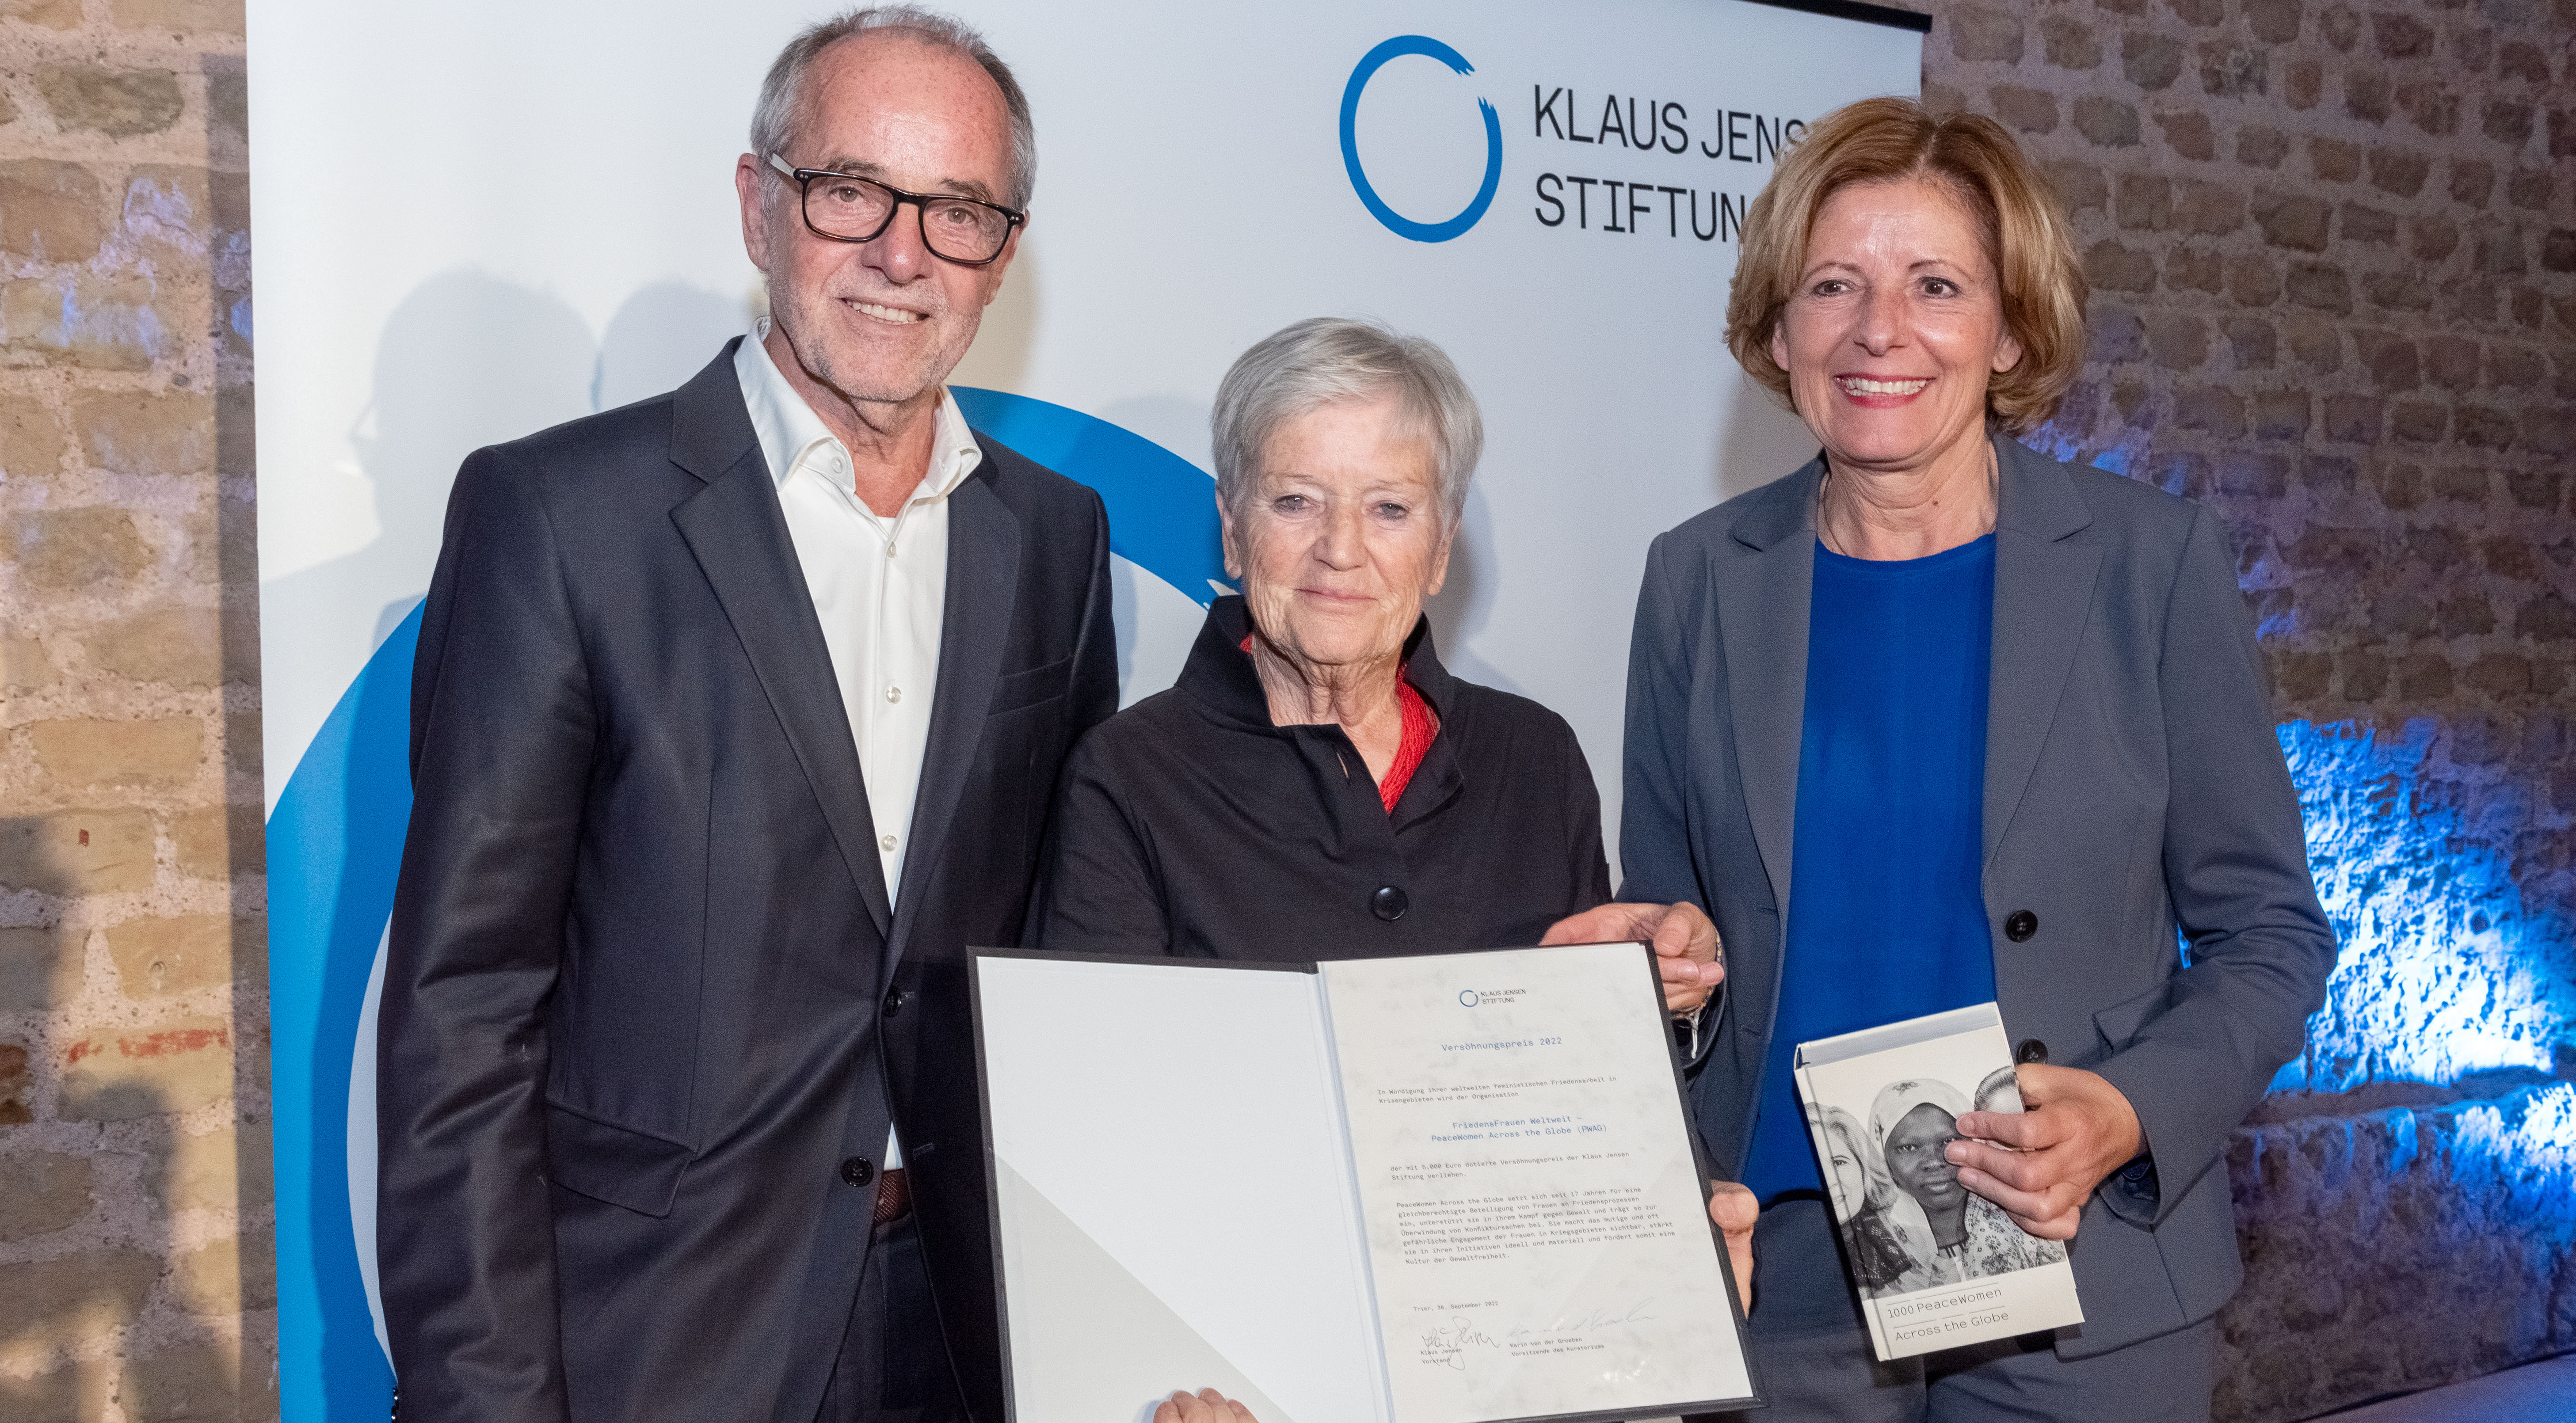 Femmes de Paix Autour du Monde reçoit le prix de la réconciliation de la fondation Klaus Jensen